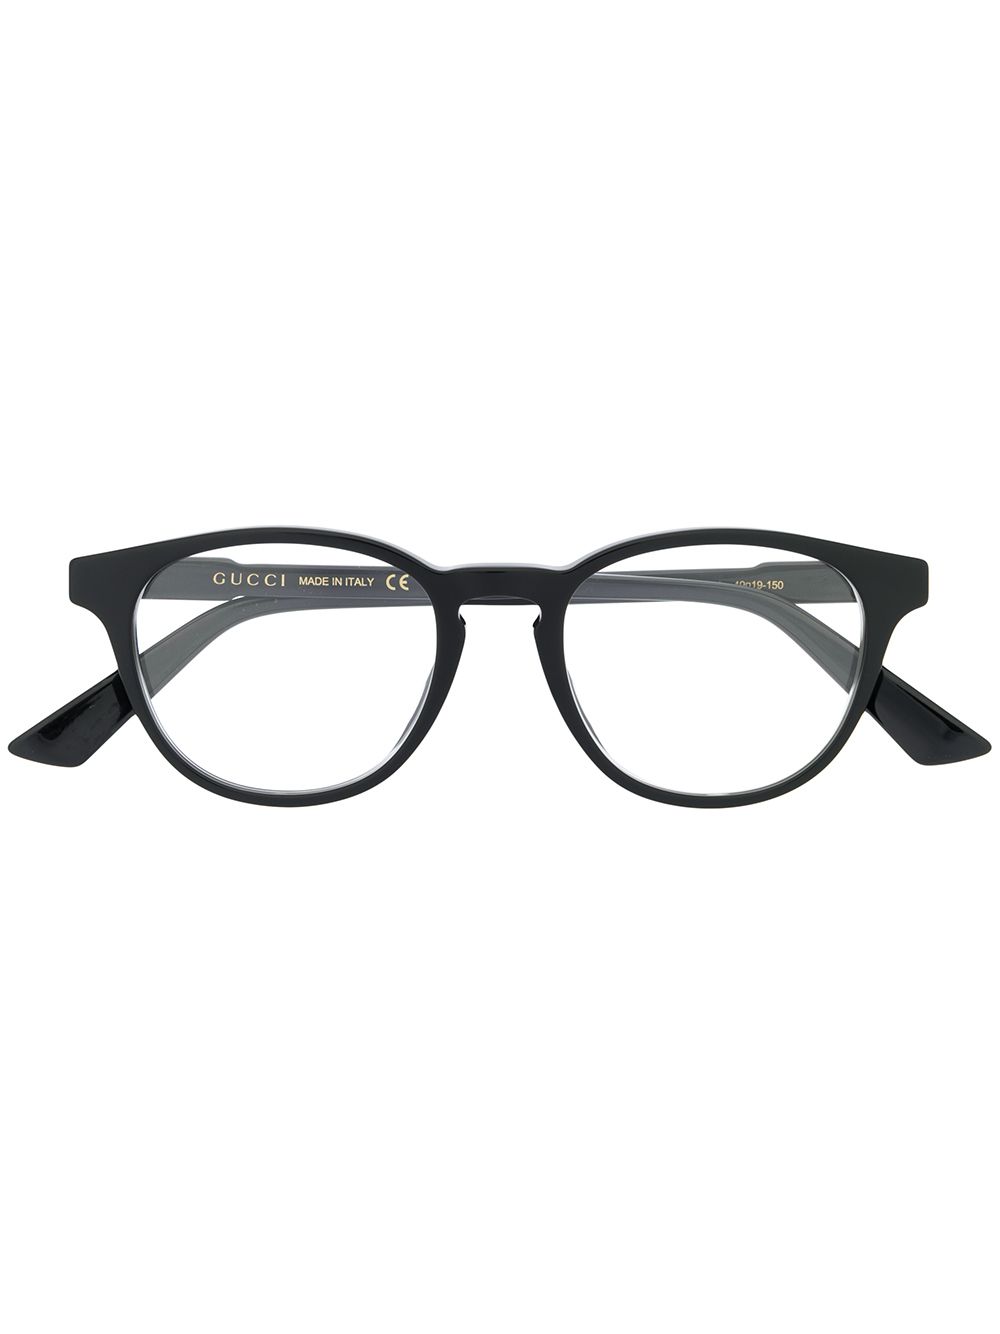 Gucci Eyewear Oval Frame Glasses - Farfetch